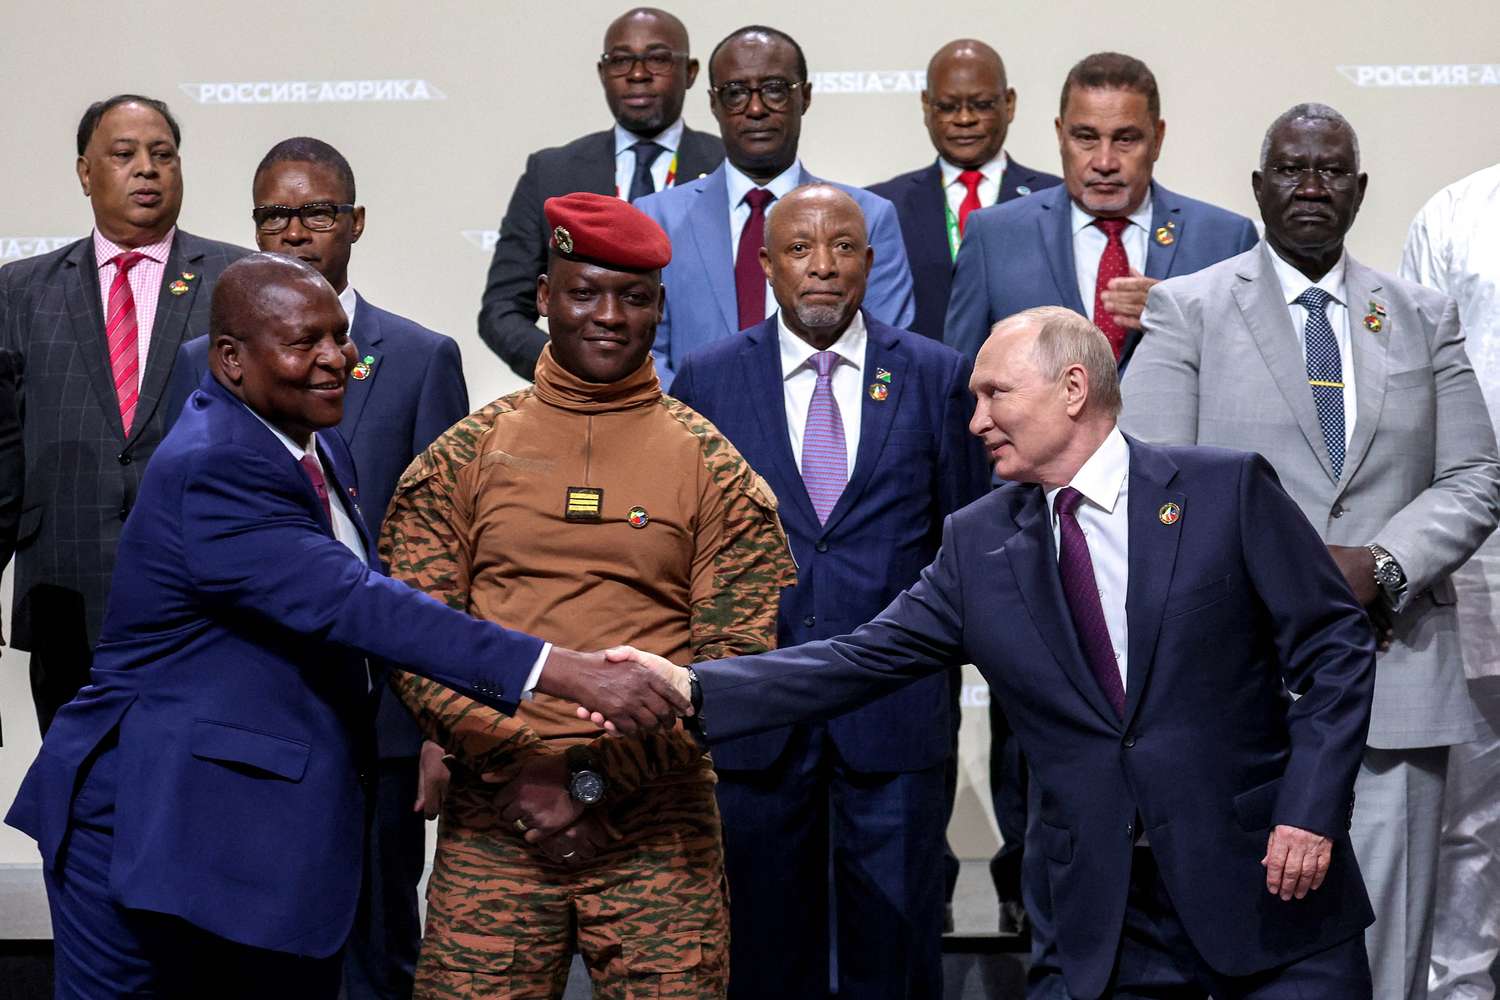 El presidente ruso Vladimir Putin y los participantes de la cumbre Rusia-África posaron para una foto en San Petersburgo.